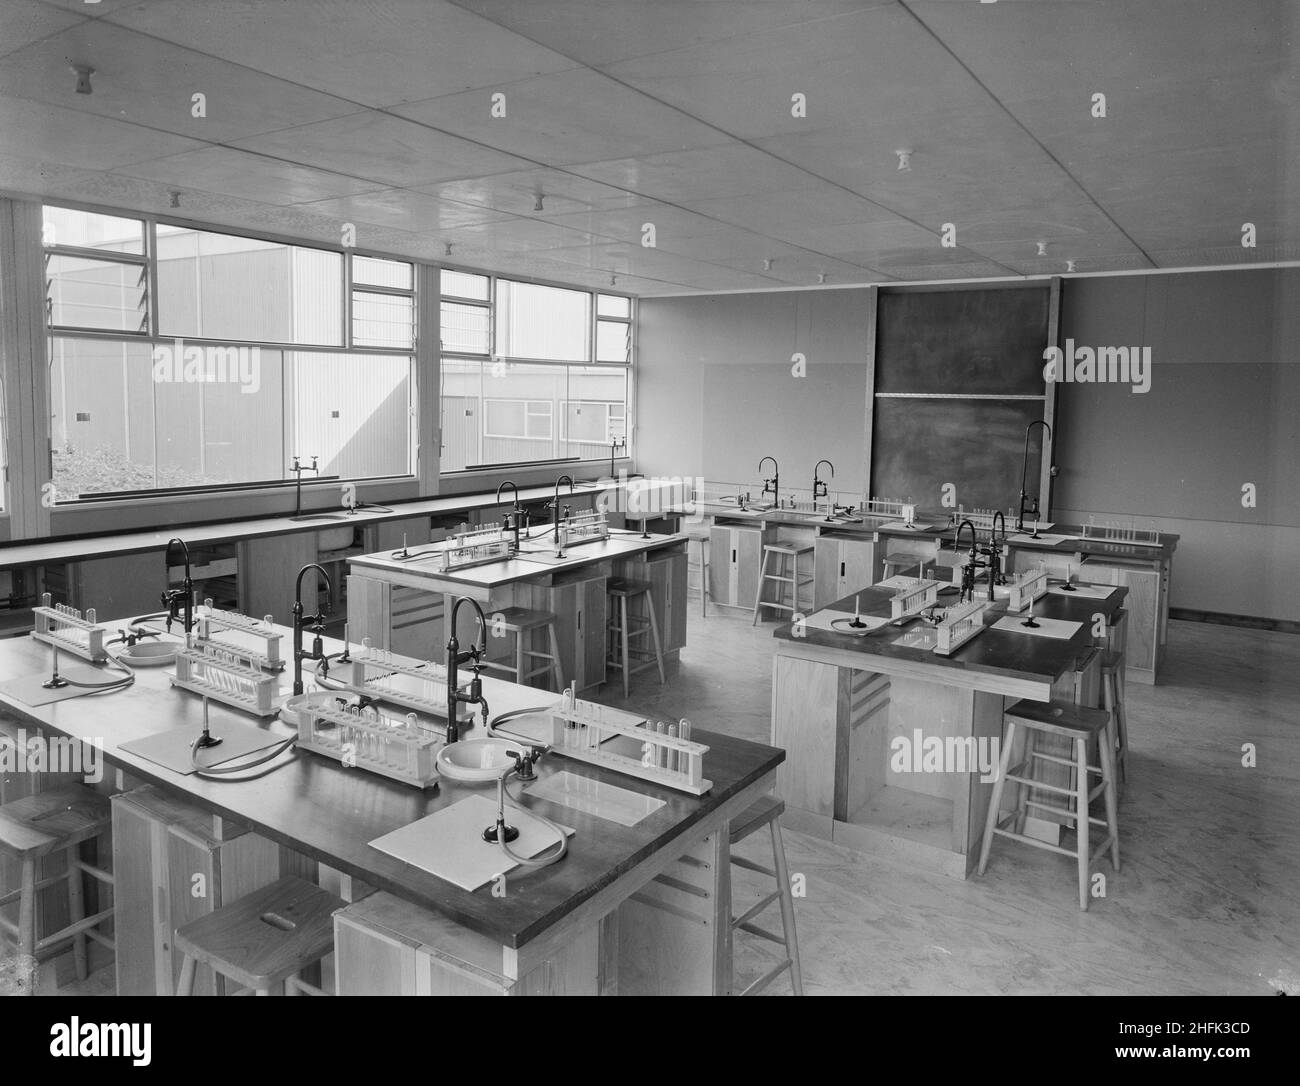 County High School, Gedling Road, Arnold, Gedling, Nottinghamshire, 11/09/1959. Das Innere eines der Wissenschaftslabors der Arnold County High School, in dem Inselbänke mit Spülbecken, Gashähne mit Bunsen-Brennern und Reagenzglasgestellen zu sehen sind. Der Wissenschaftsblock beherbergte im Erdgeschoss und im ersten Stock Labors für Chemie, Biologie, Physik, Mathematik und Allgemeinwissenschaften, und im zweiten Stock befand sich ein Hörsaal mit erhöhten Sitzplätzen, ein optisches Labor sowie Geografie- und technische Salons. Dieses Foto wurde in der Oktober 1959-Ausgabe von Team Spirit, The Laing Compa, gezeigt Stockfoto